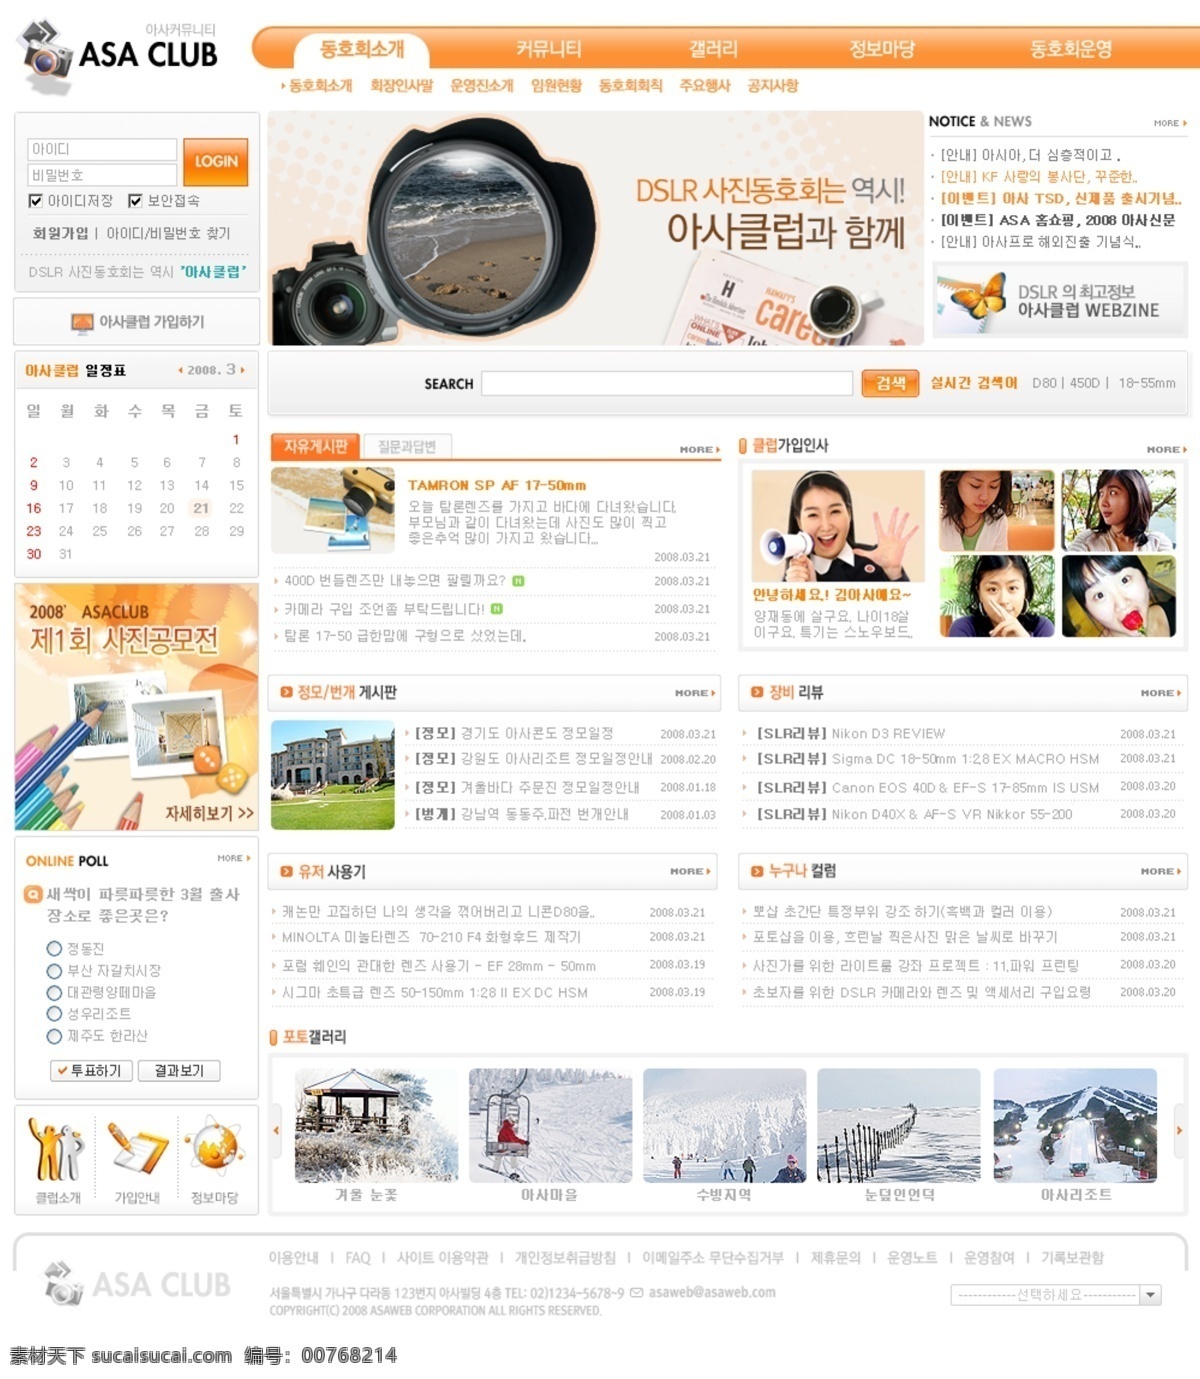 橘黄色 户外运动 俱乐部 网页模板 韩国风格 橘黄色调 网页素材